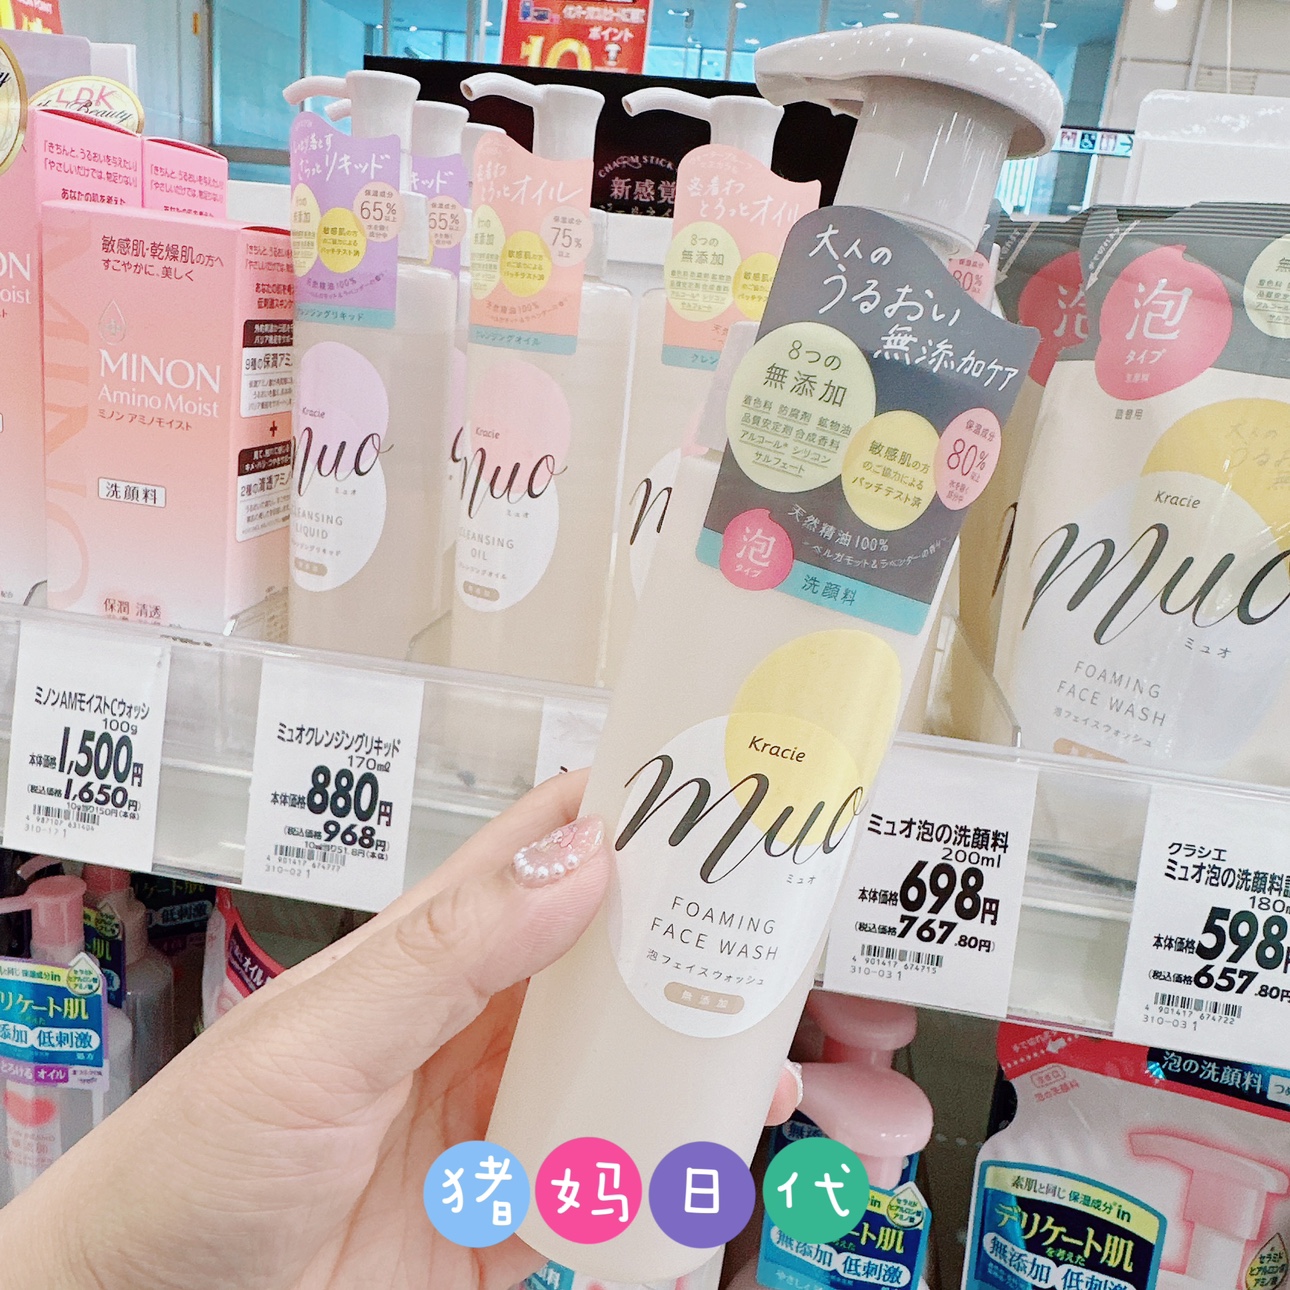 日本kracie嘉娜宝 muo氨基酸泡沫洗面奶无添加温和保湿洁面泡沫